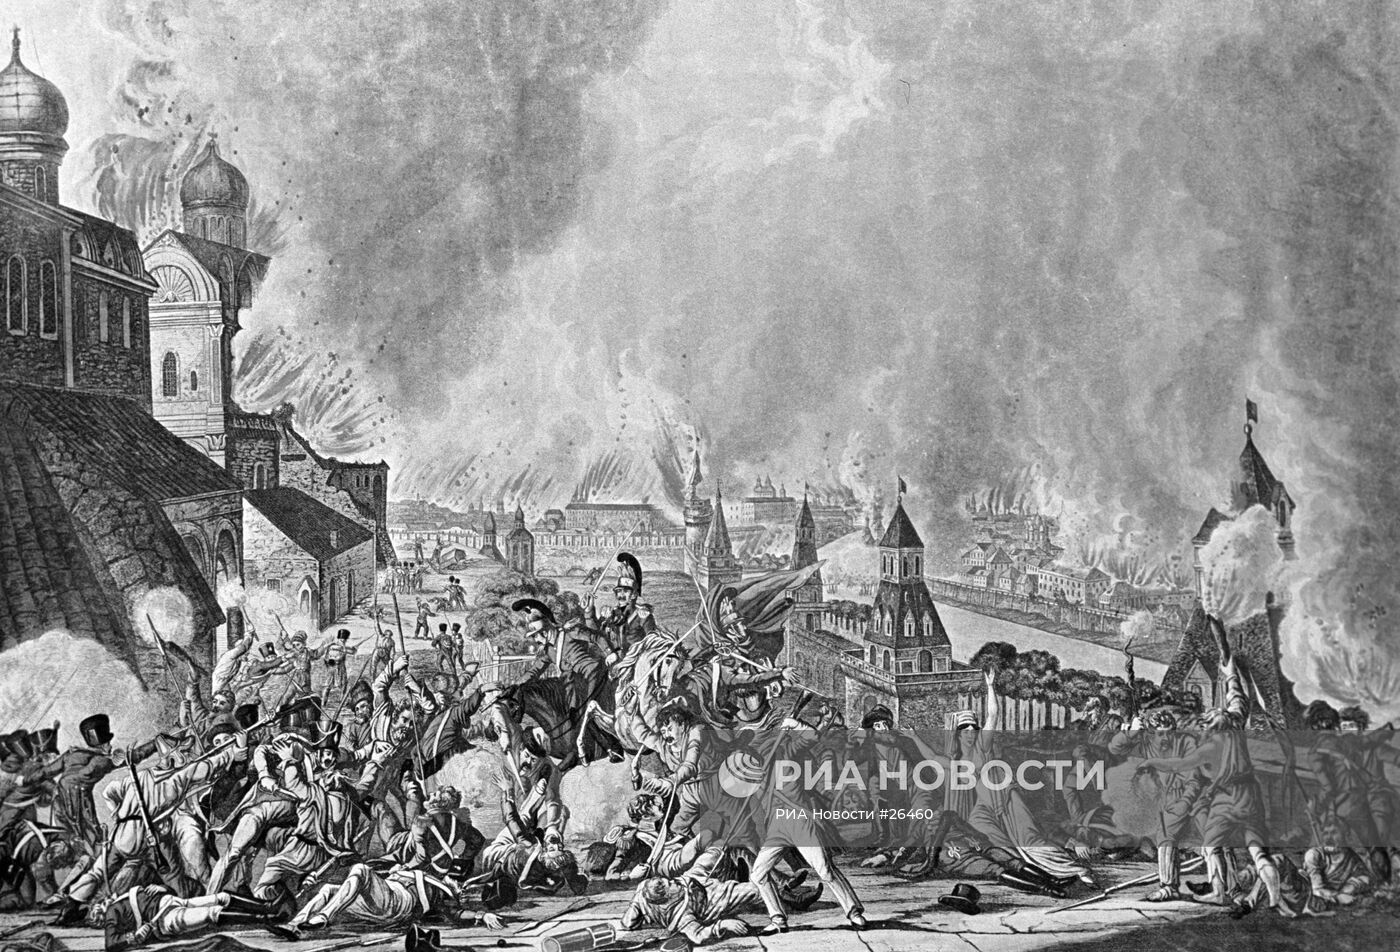 Репродукция гравюры "Пожар Москвы 15 сентября 1812 года"